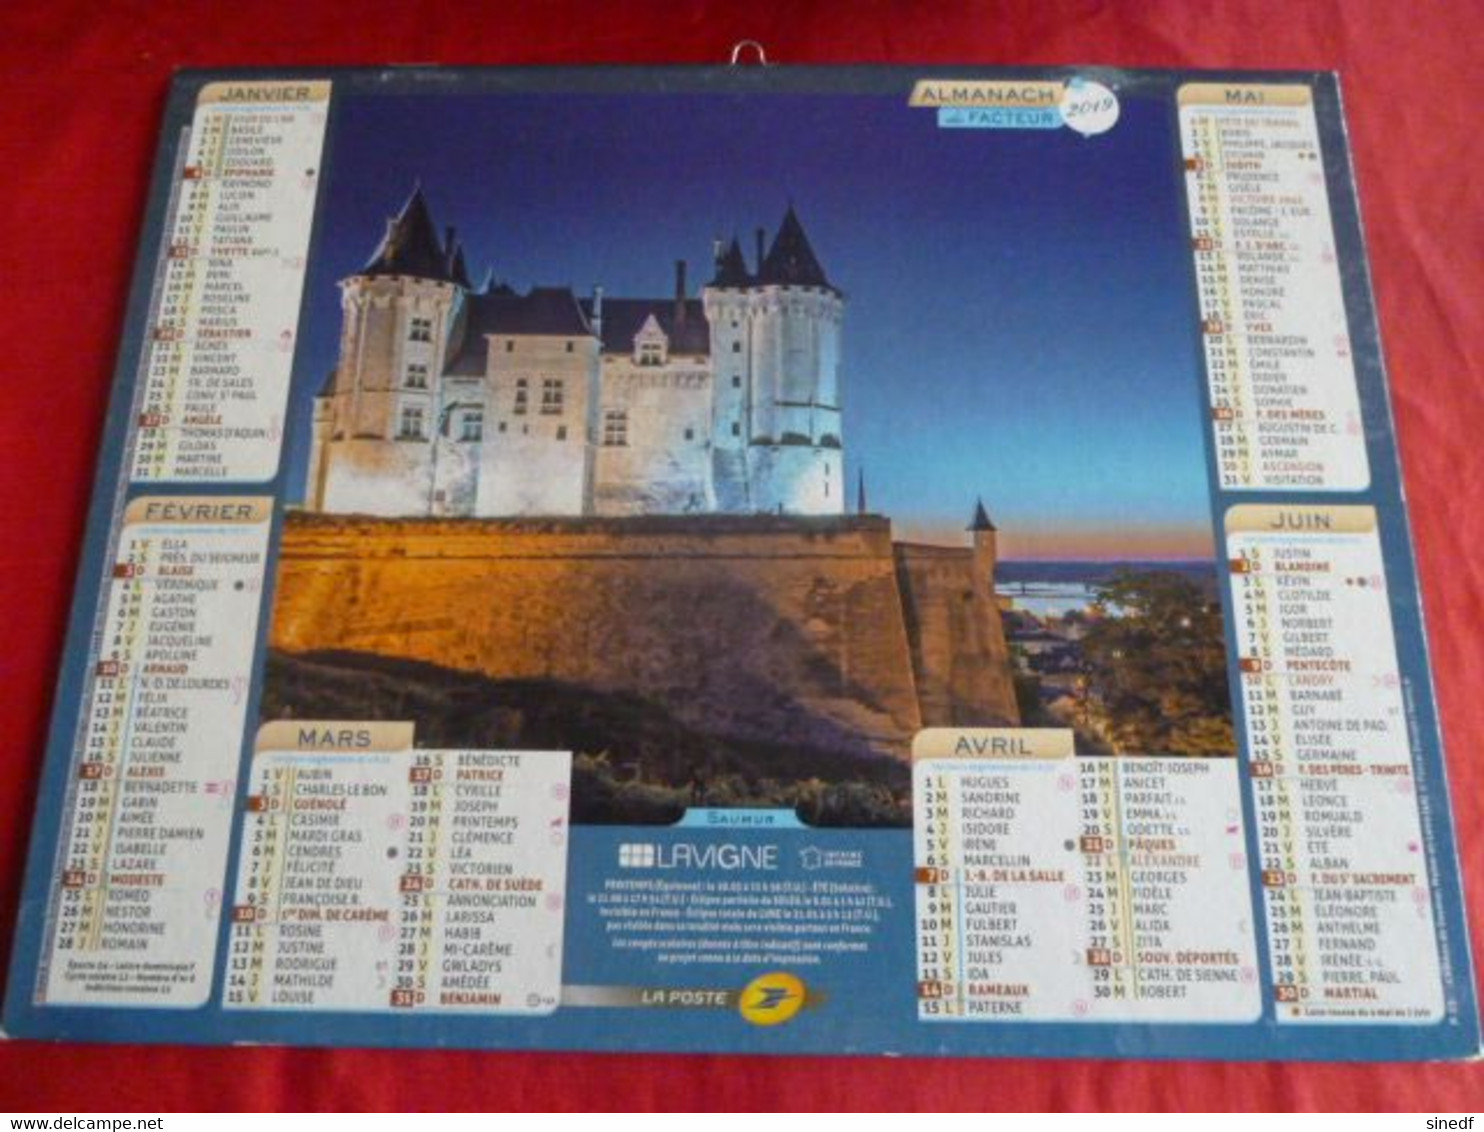 Calendrier Lavigne  2019 Almanach Chateau SAUMUR CHAMBORD  Facteur Département Sarthe La Poste PTT - Grand Format : 2001-...